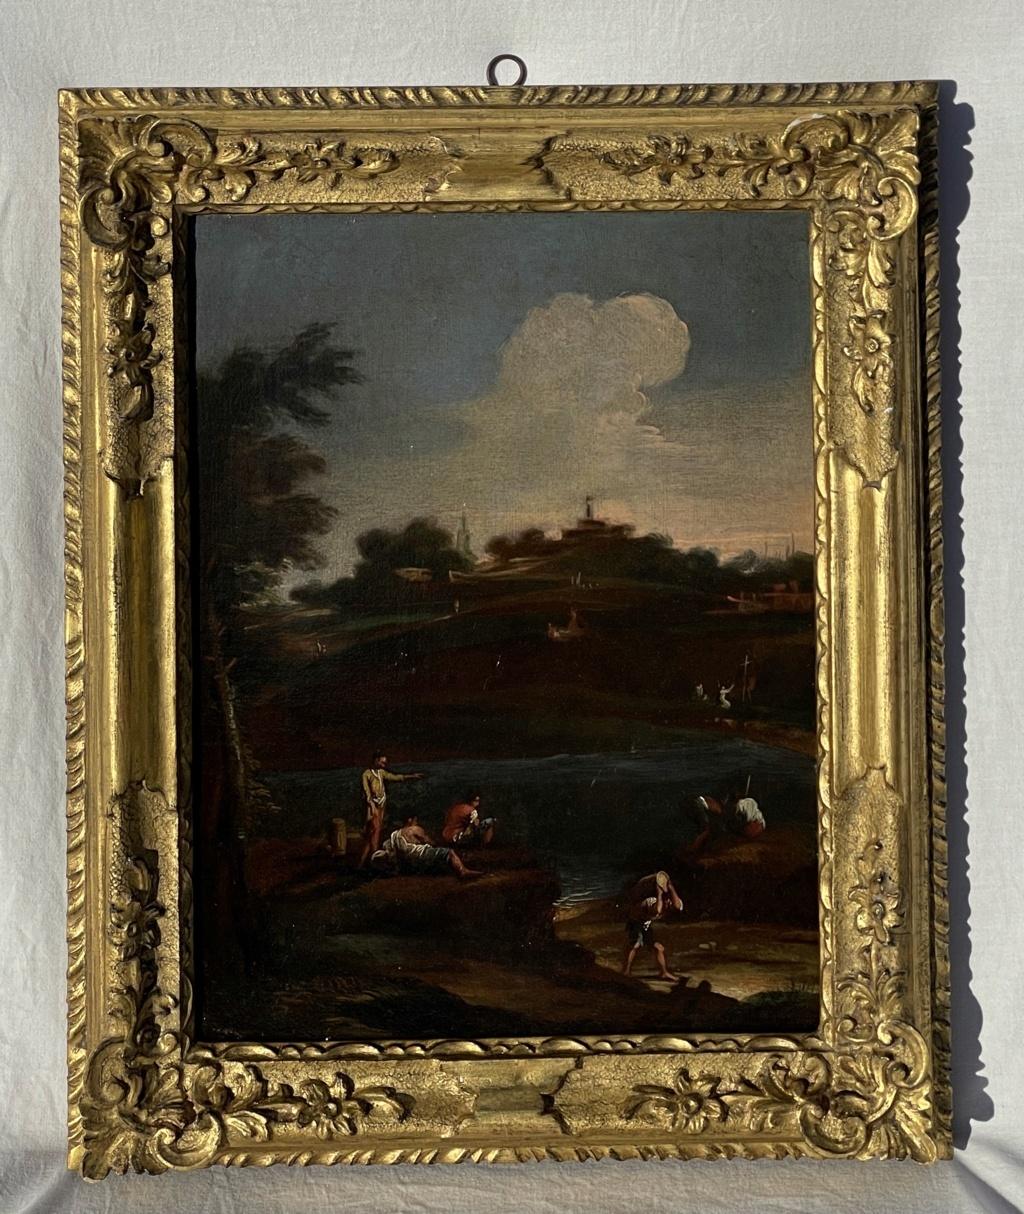 Venezianischer Anhänger von Marco Ricci – Landschaftsmalerei mit Figuren aus dem 18. Jahrhundert – Painting von Unknown